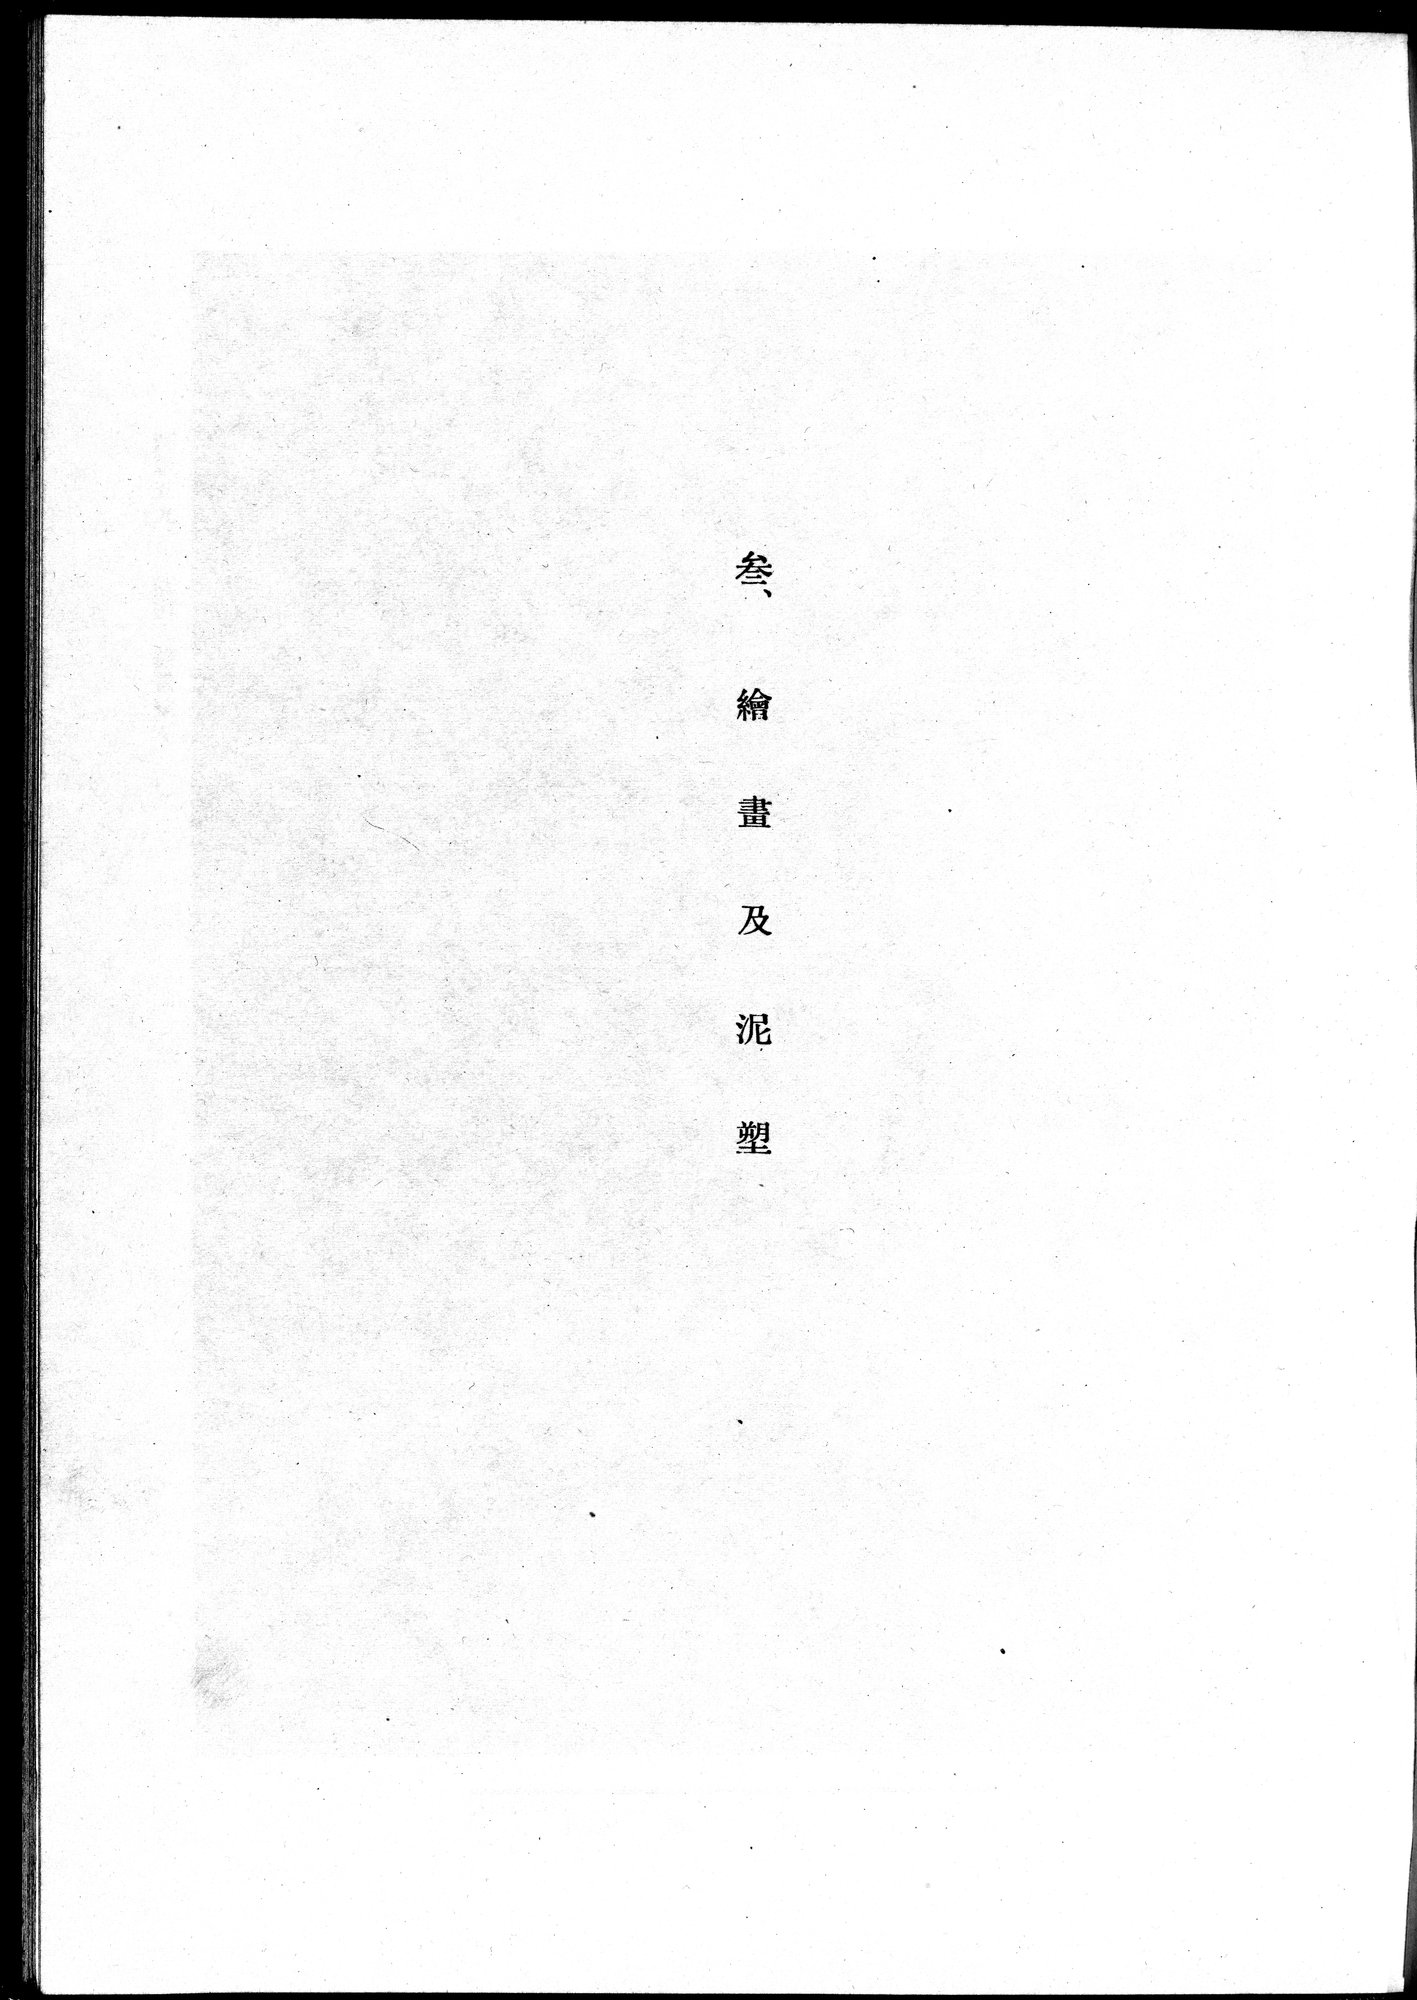 吐魯番考古記 : vol.1 / Page 167 (Grayscale High Resolution Image)